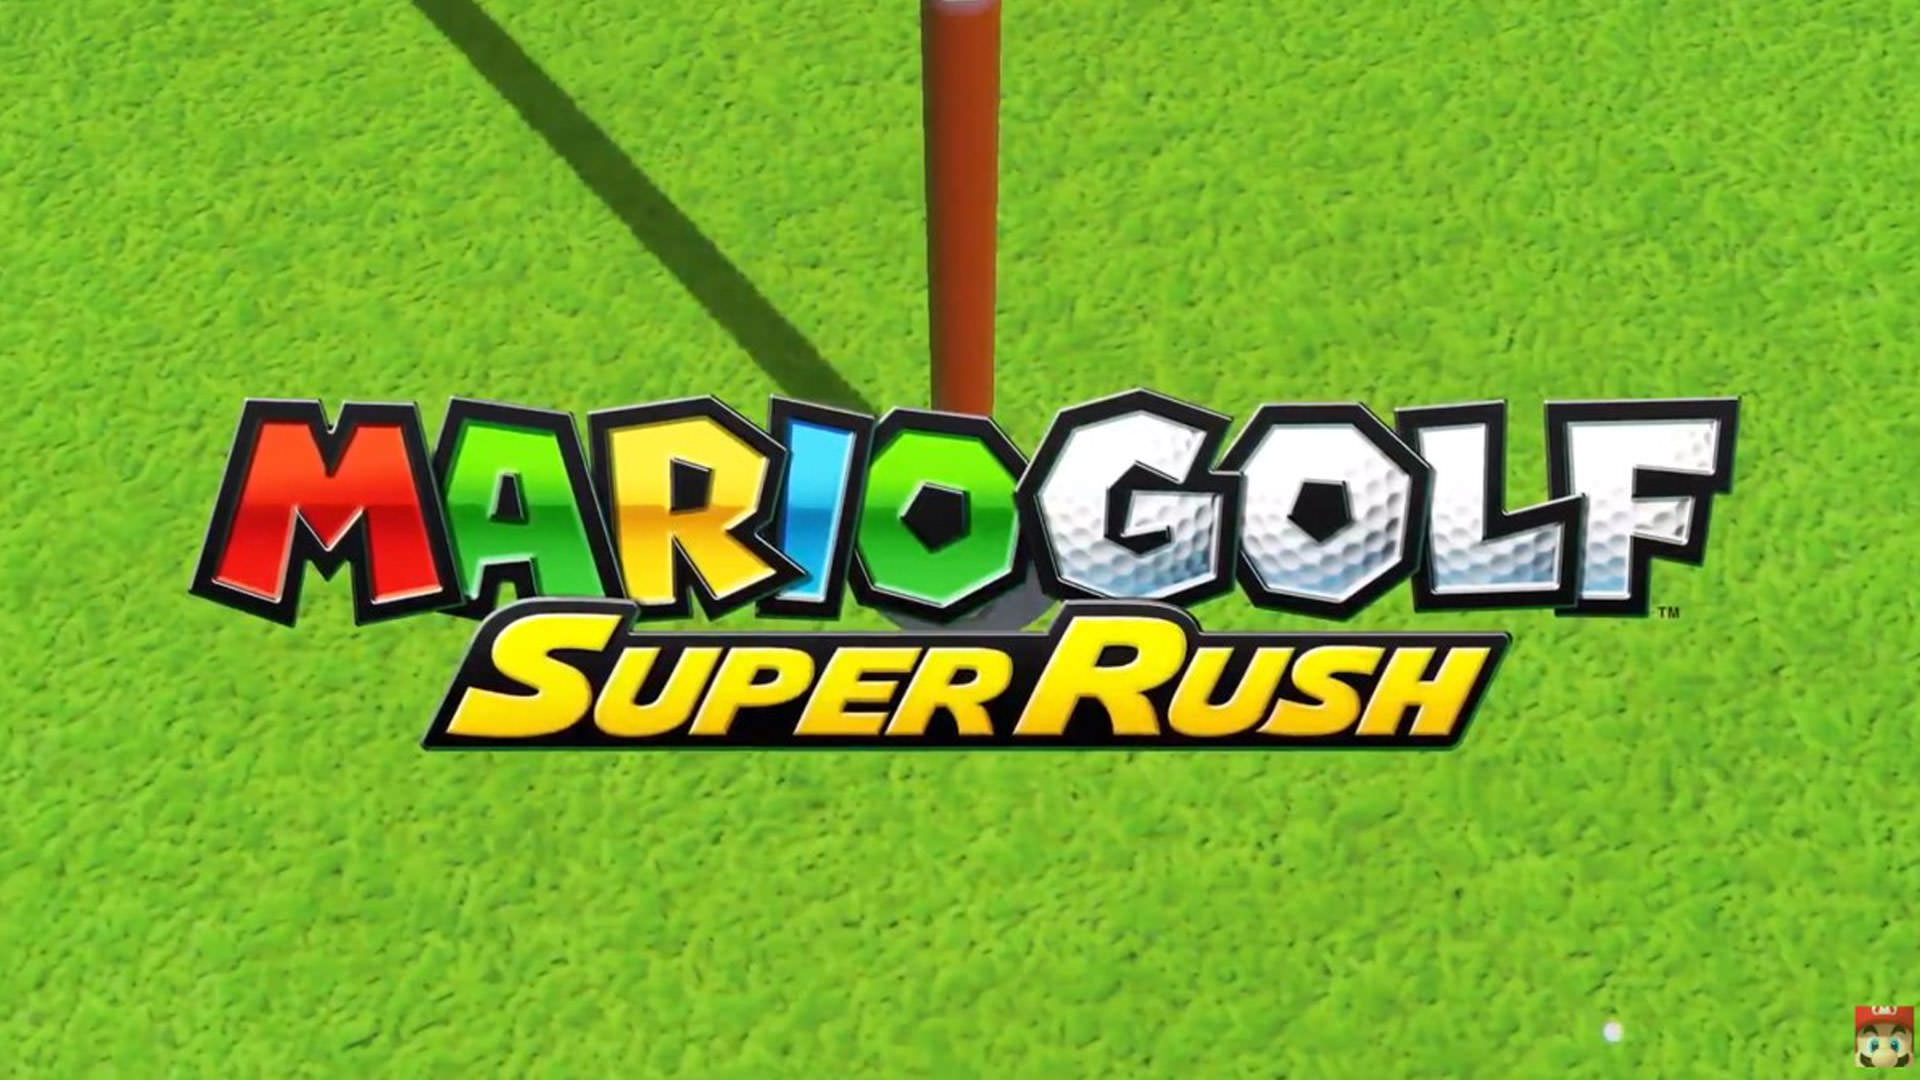 جدول فروش انگلستان: صدرنشینی Mario Golf در دومین هفته انتشار